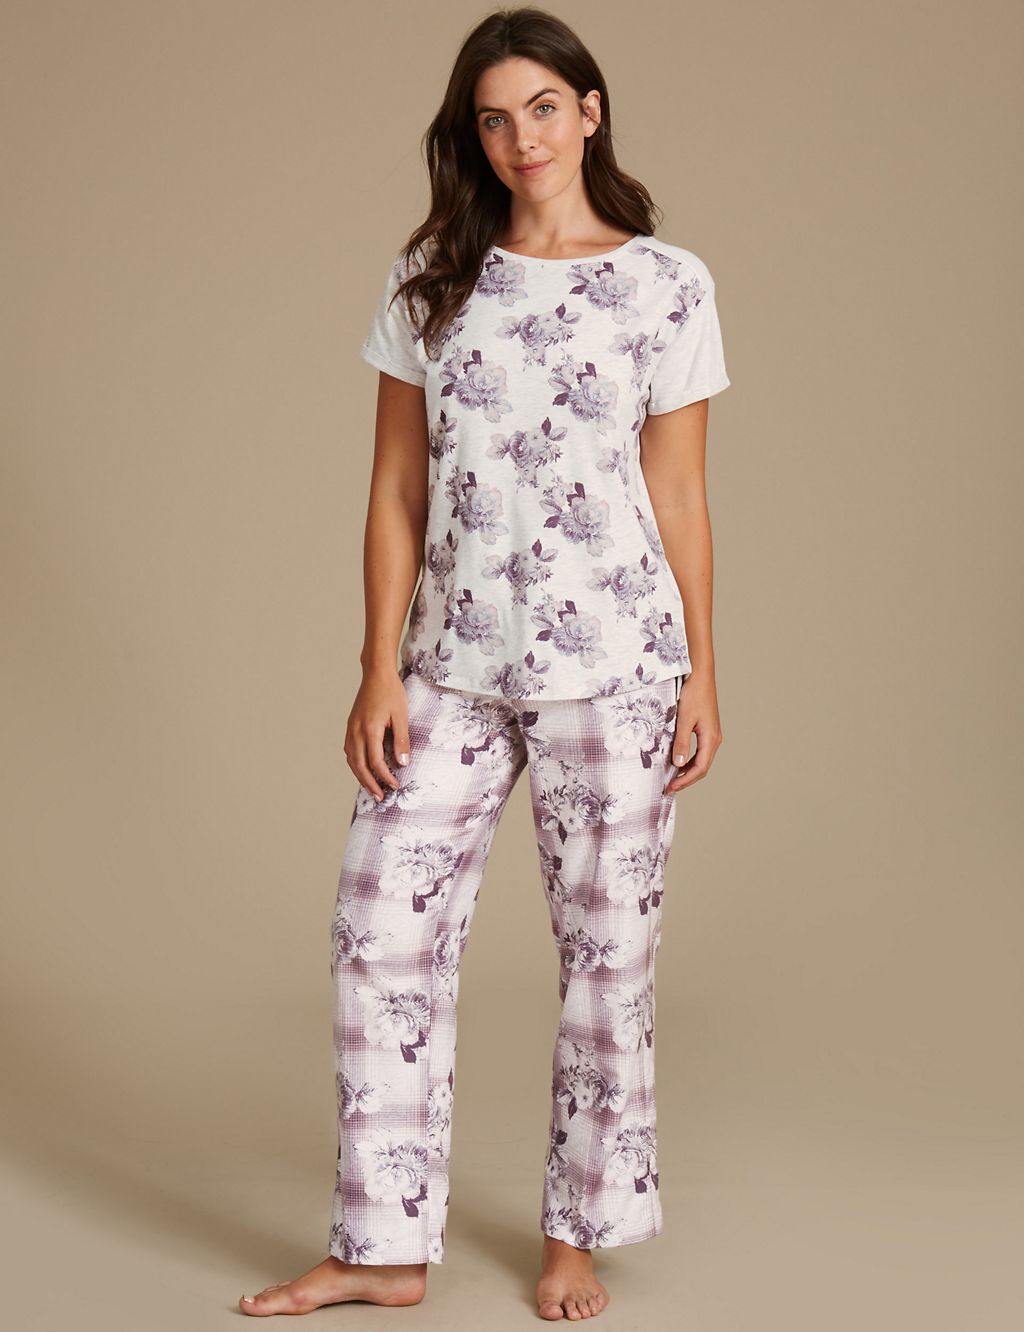 Floral Print Short Sleeve Pyjama Top 4 of 6